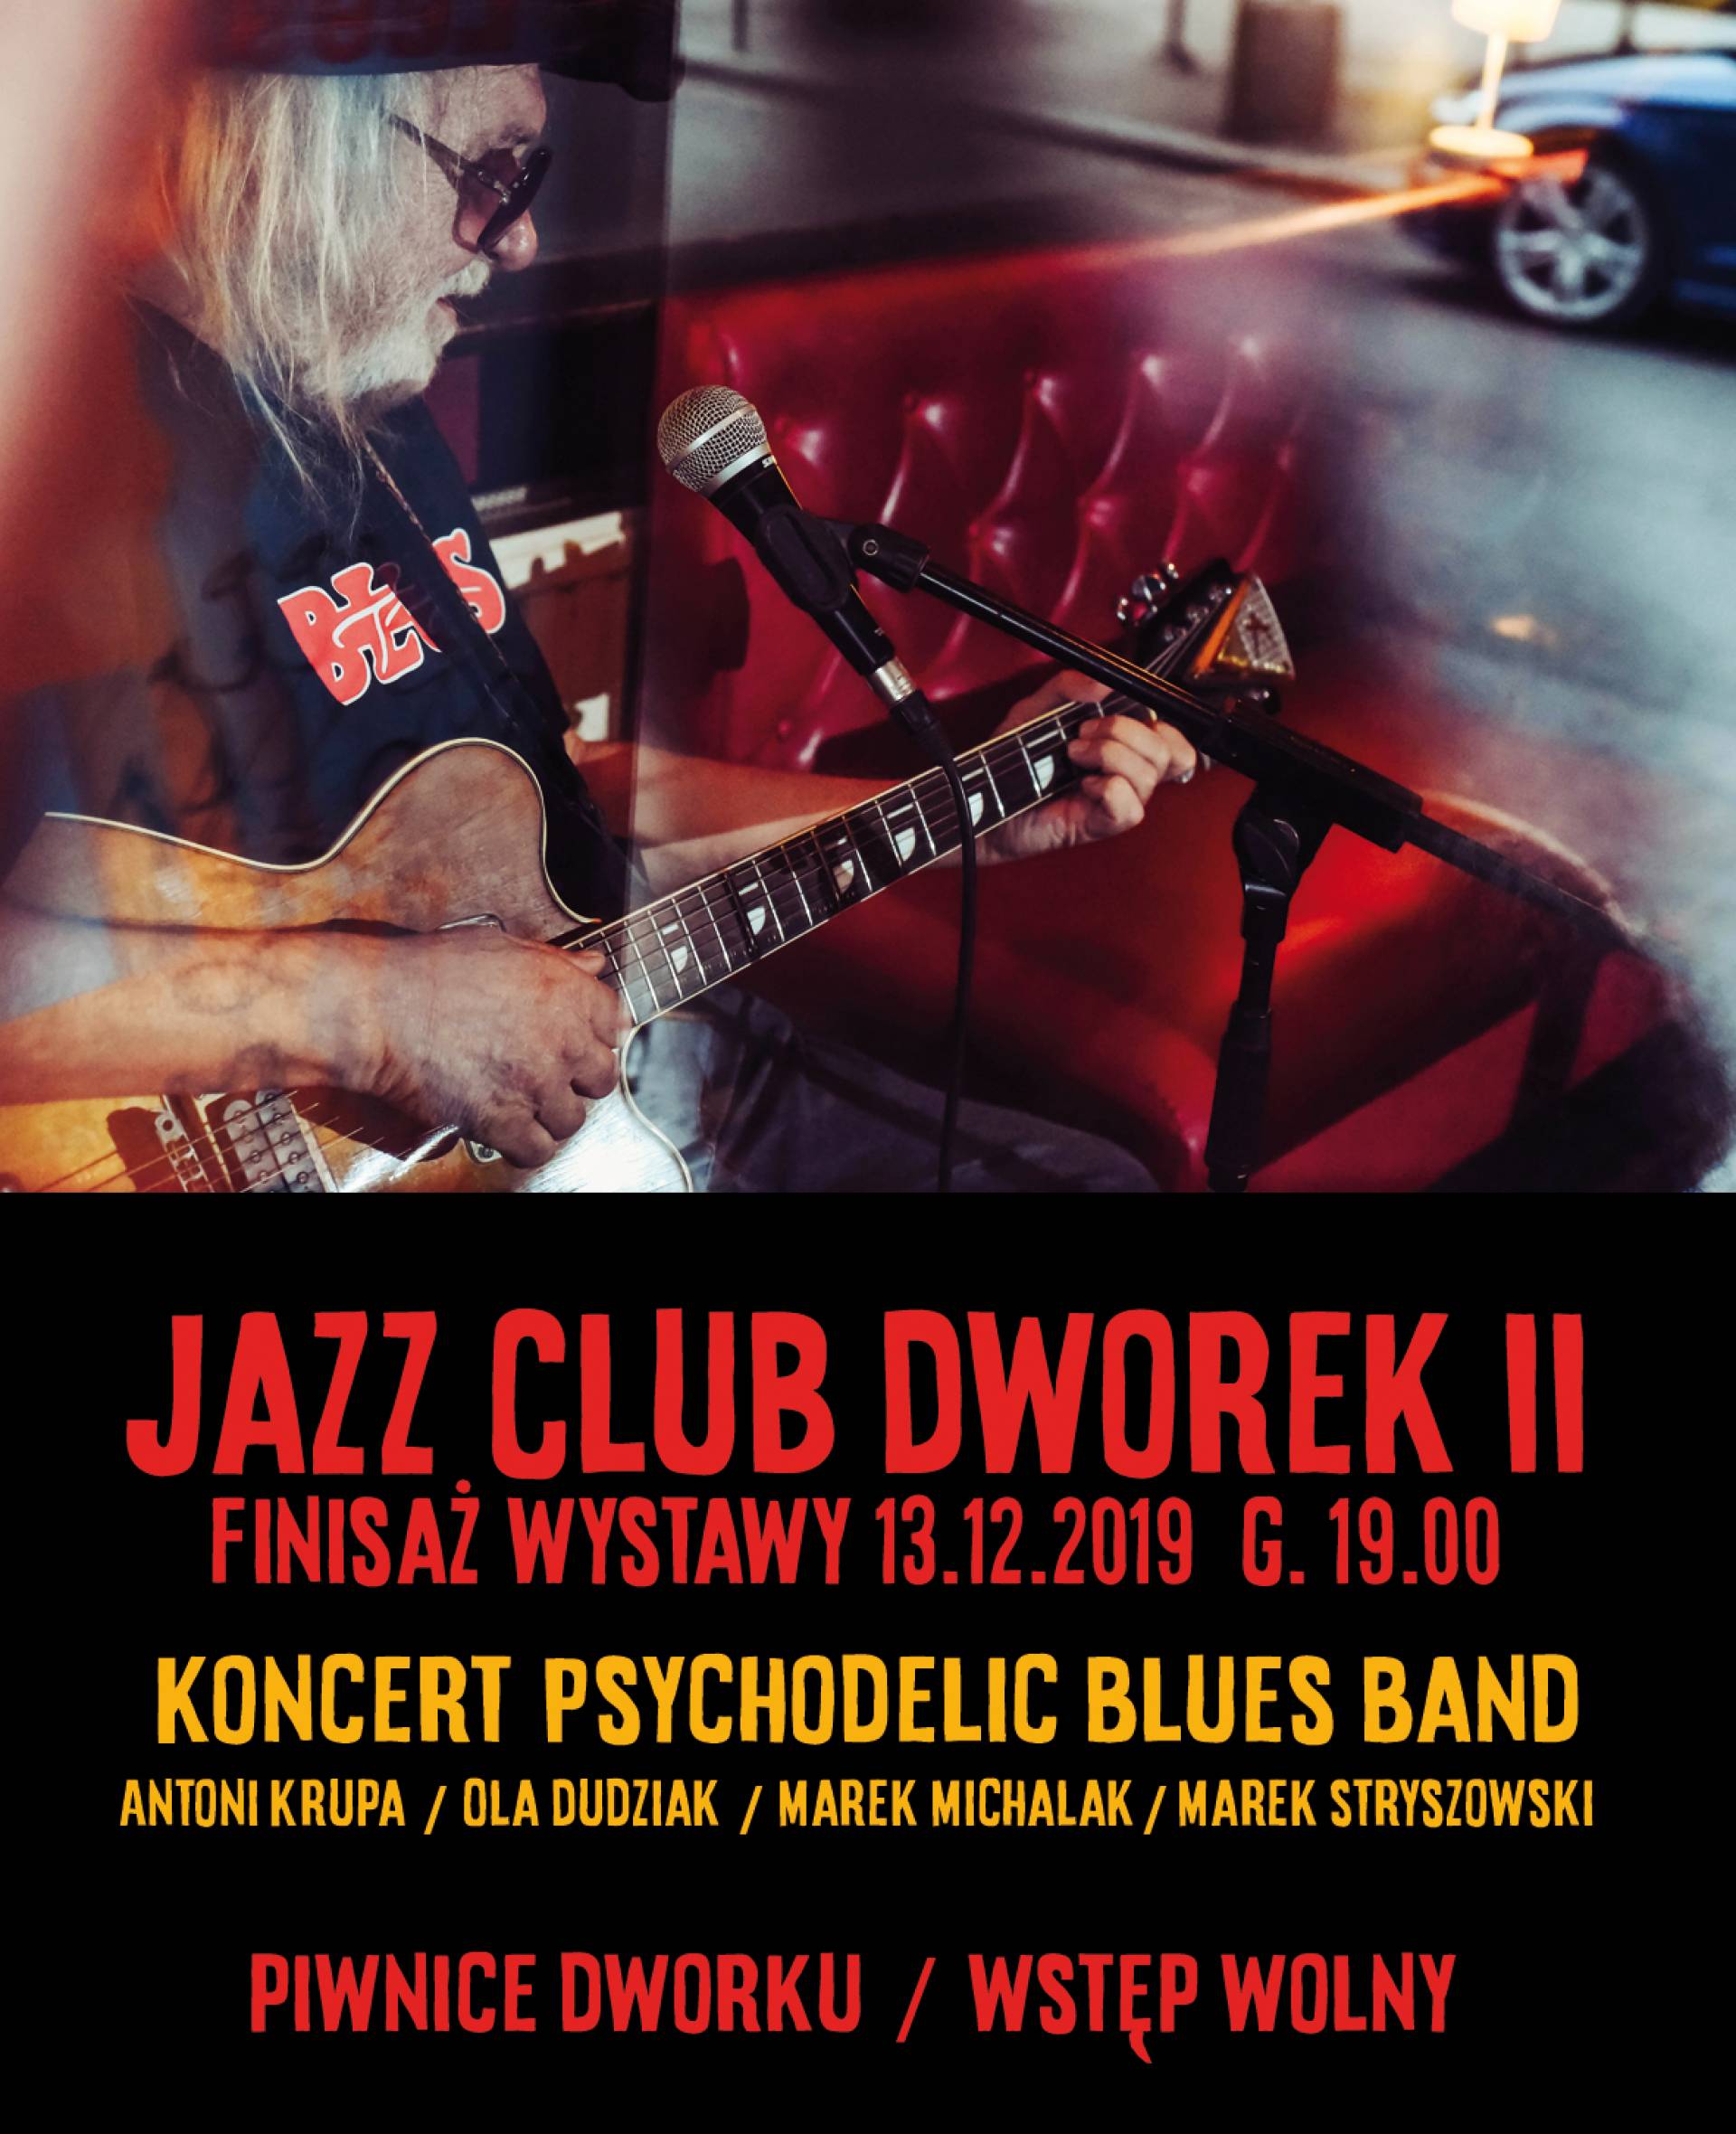 Wieczór bluesa i rockowych ballad + finisaż Jazz Club Dworek II